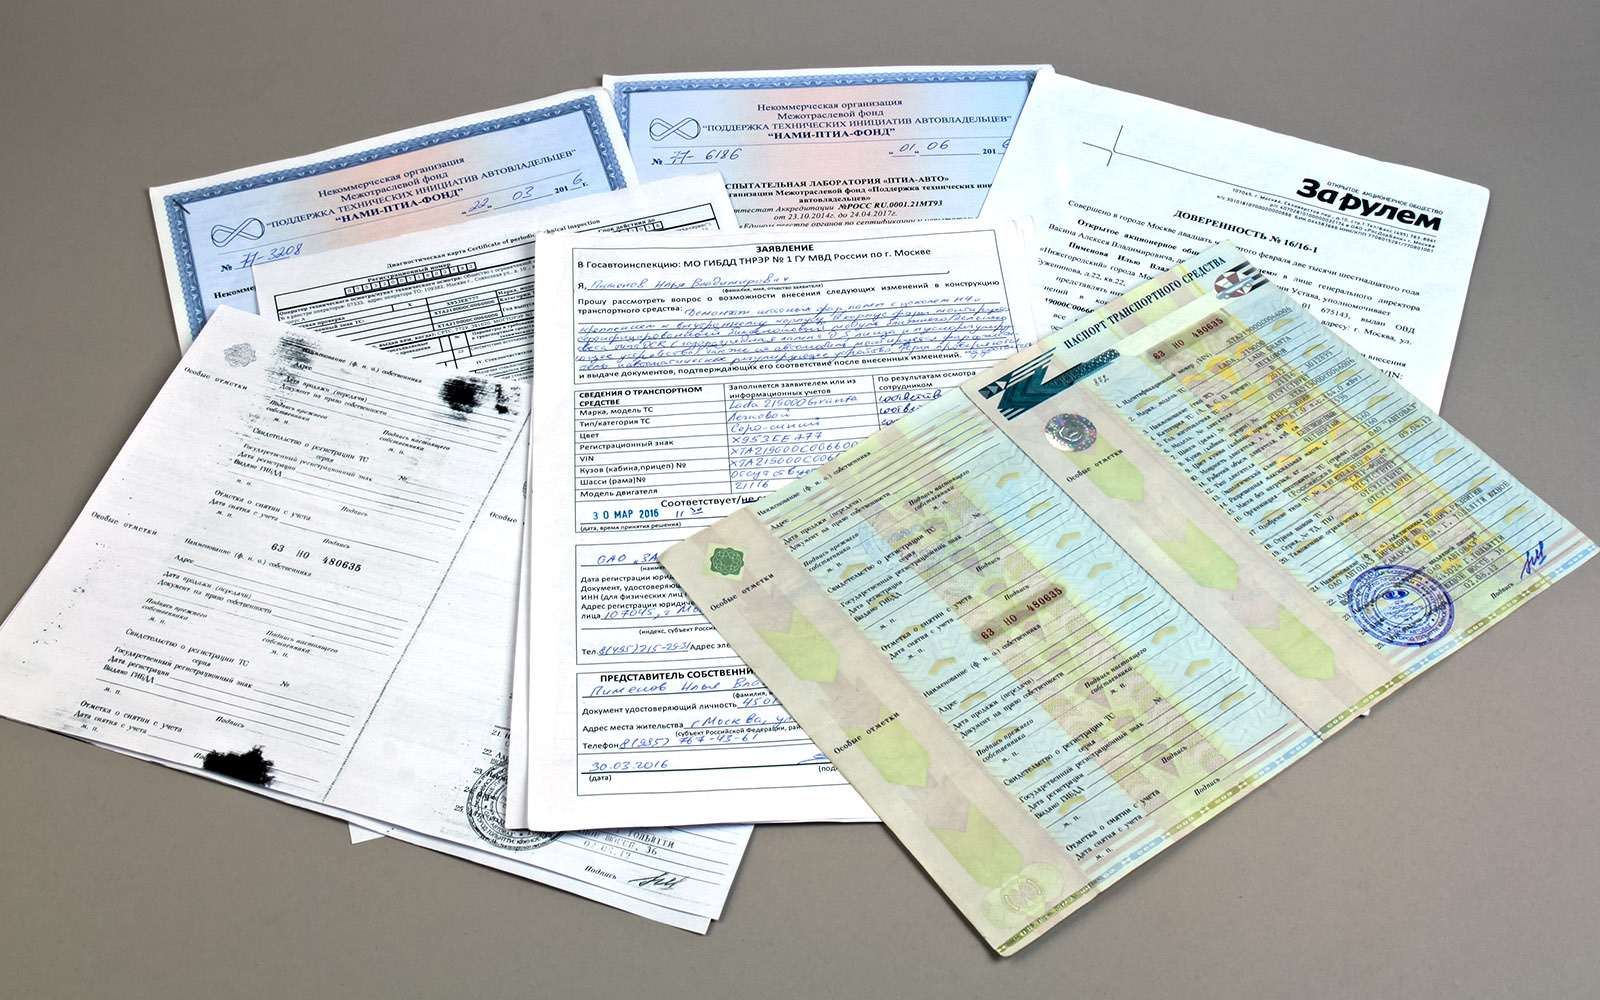 Предварительный набор документов, необходимых для легализации ксенона, – еще без копий сертификатов на комплектующие и заявления-декларации на работу.